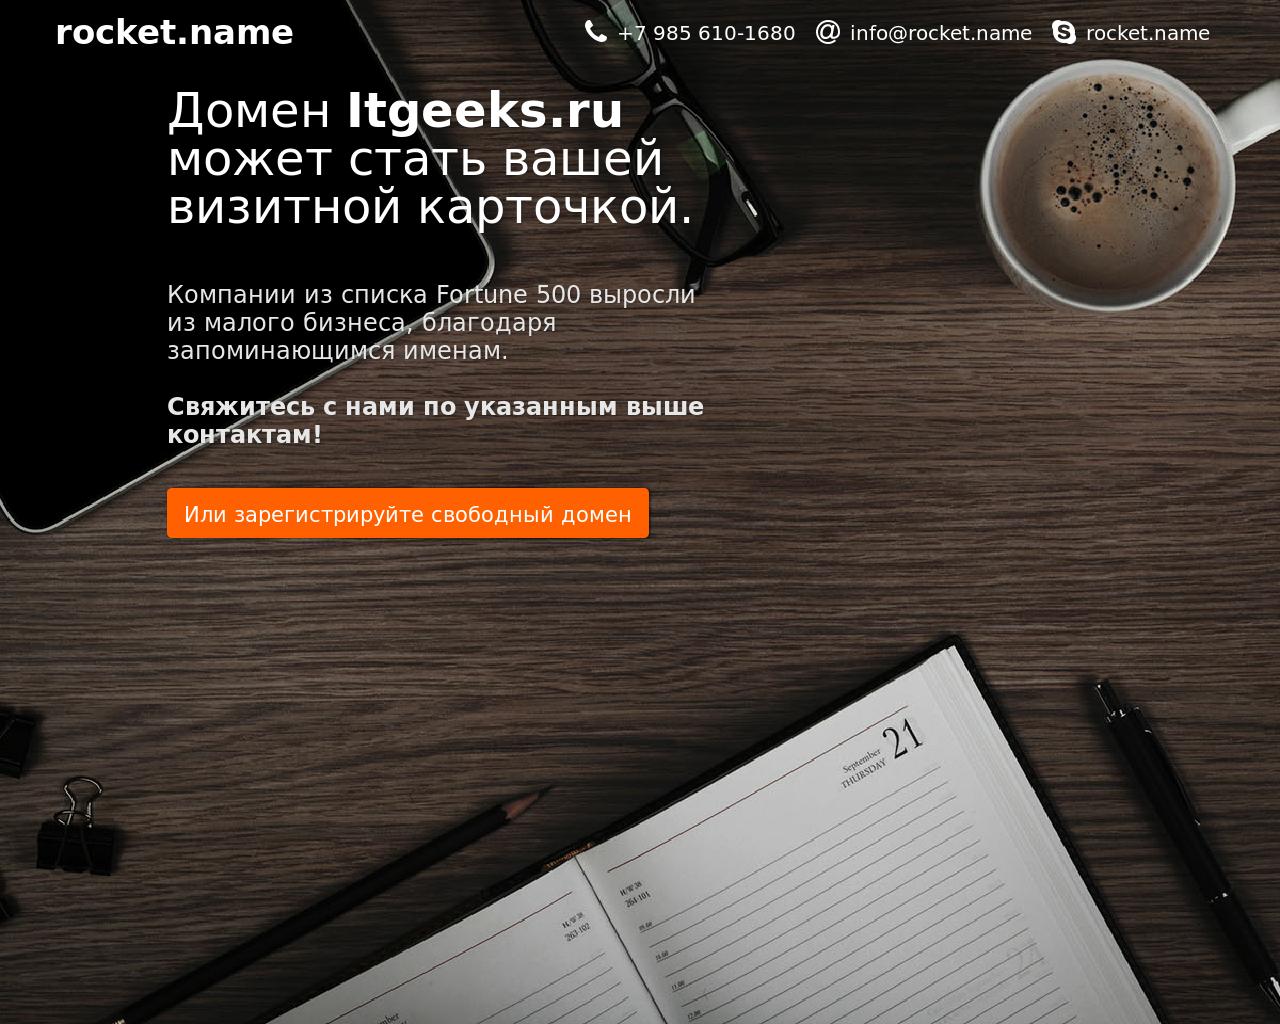 Изображение сайта itgeeks.ru в разрешении 1280x1024